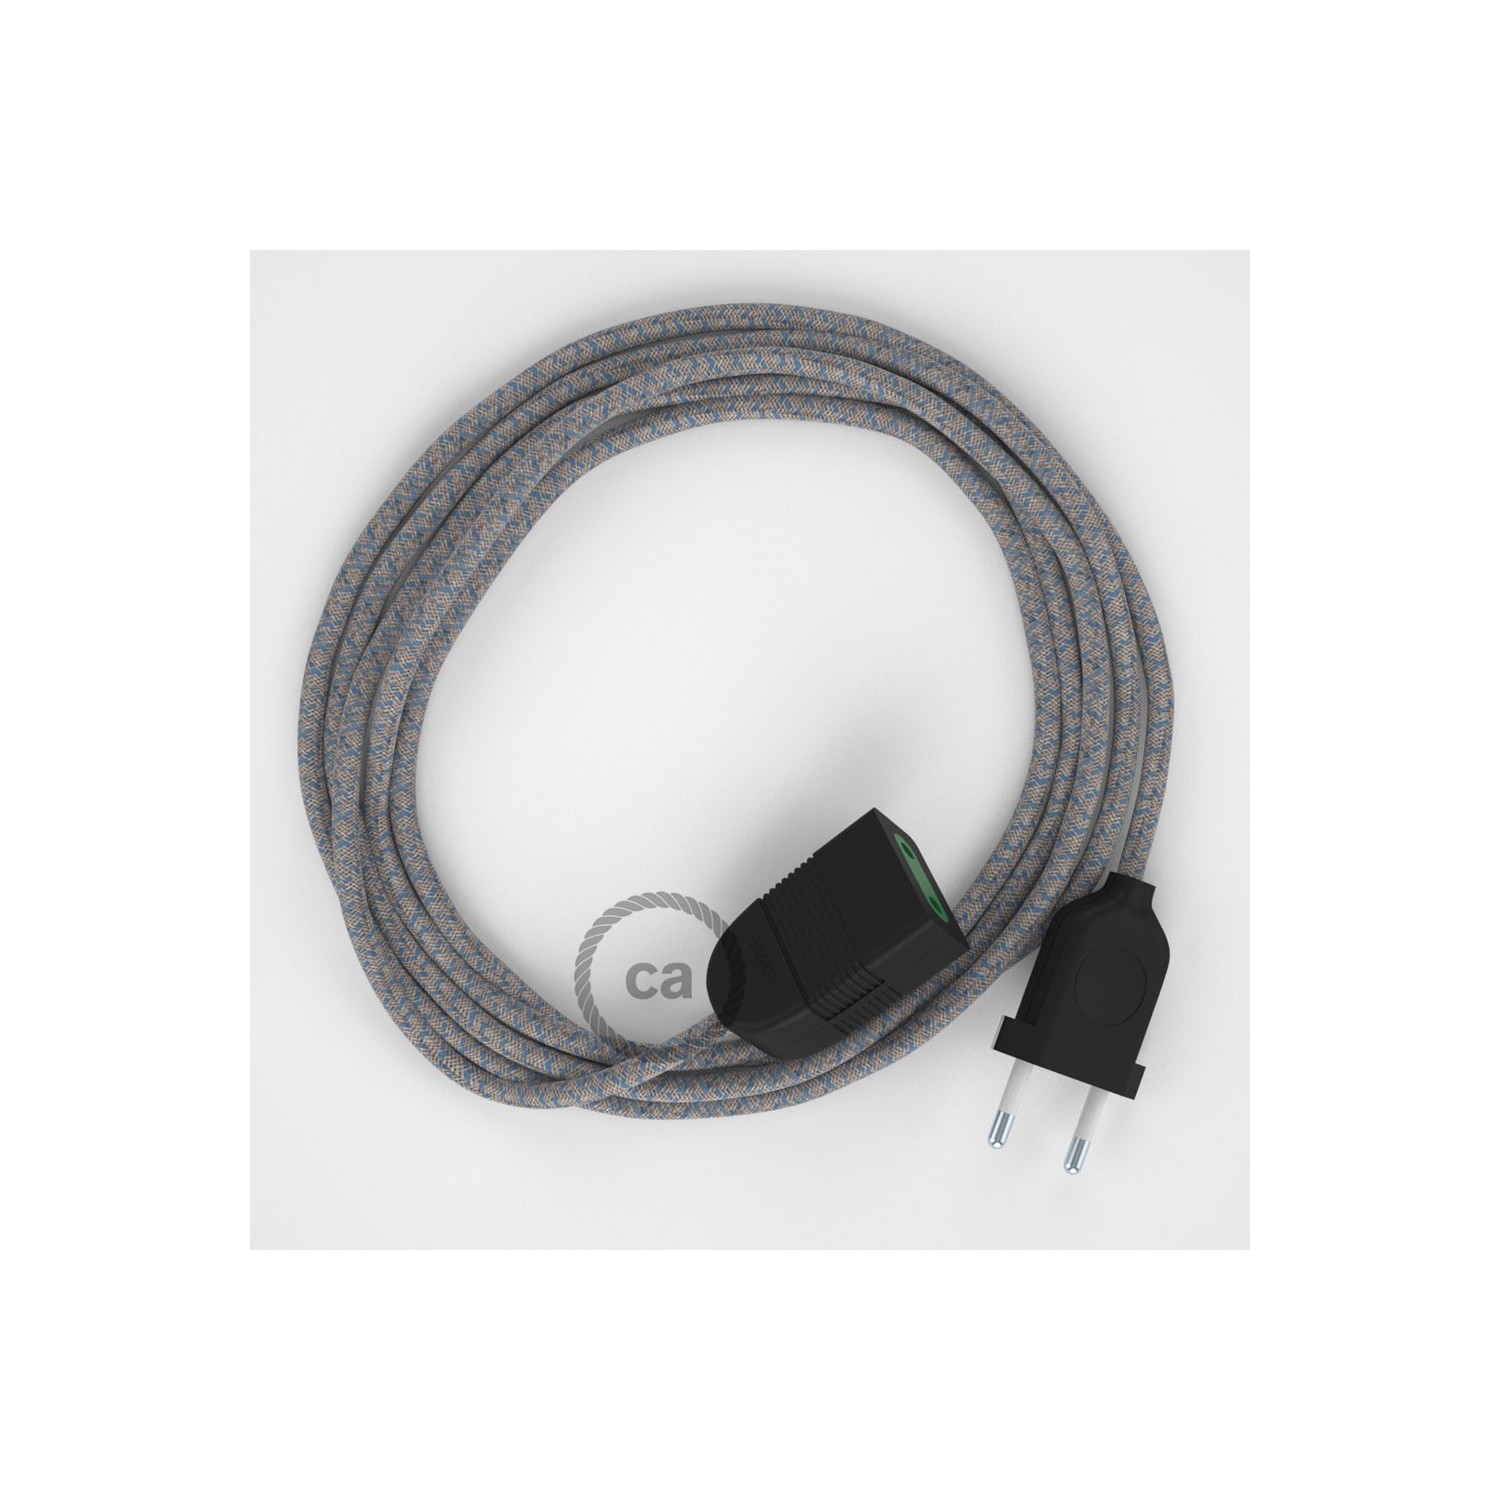 Podaljševalni kabel za napajanje (2P 10A) romb, nebesno moder naravni lan in bombaž RD65 - Made in Italy